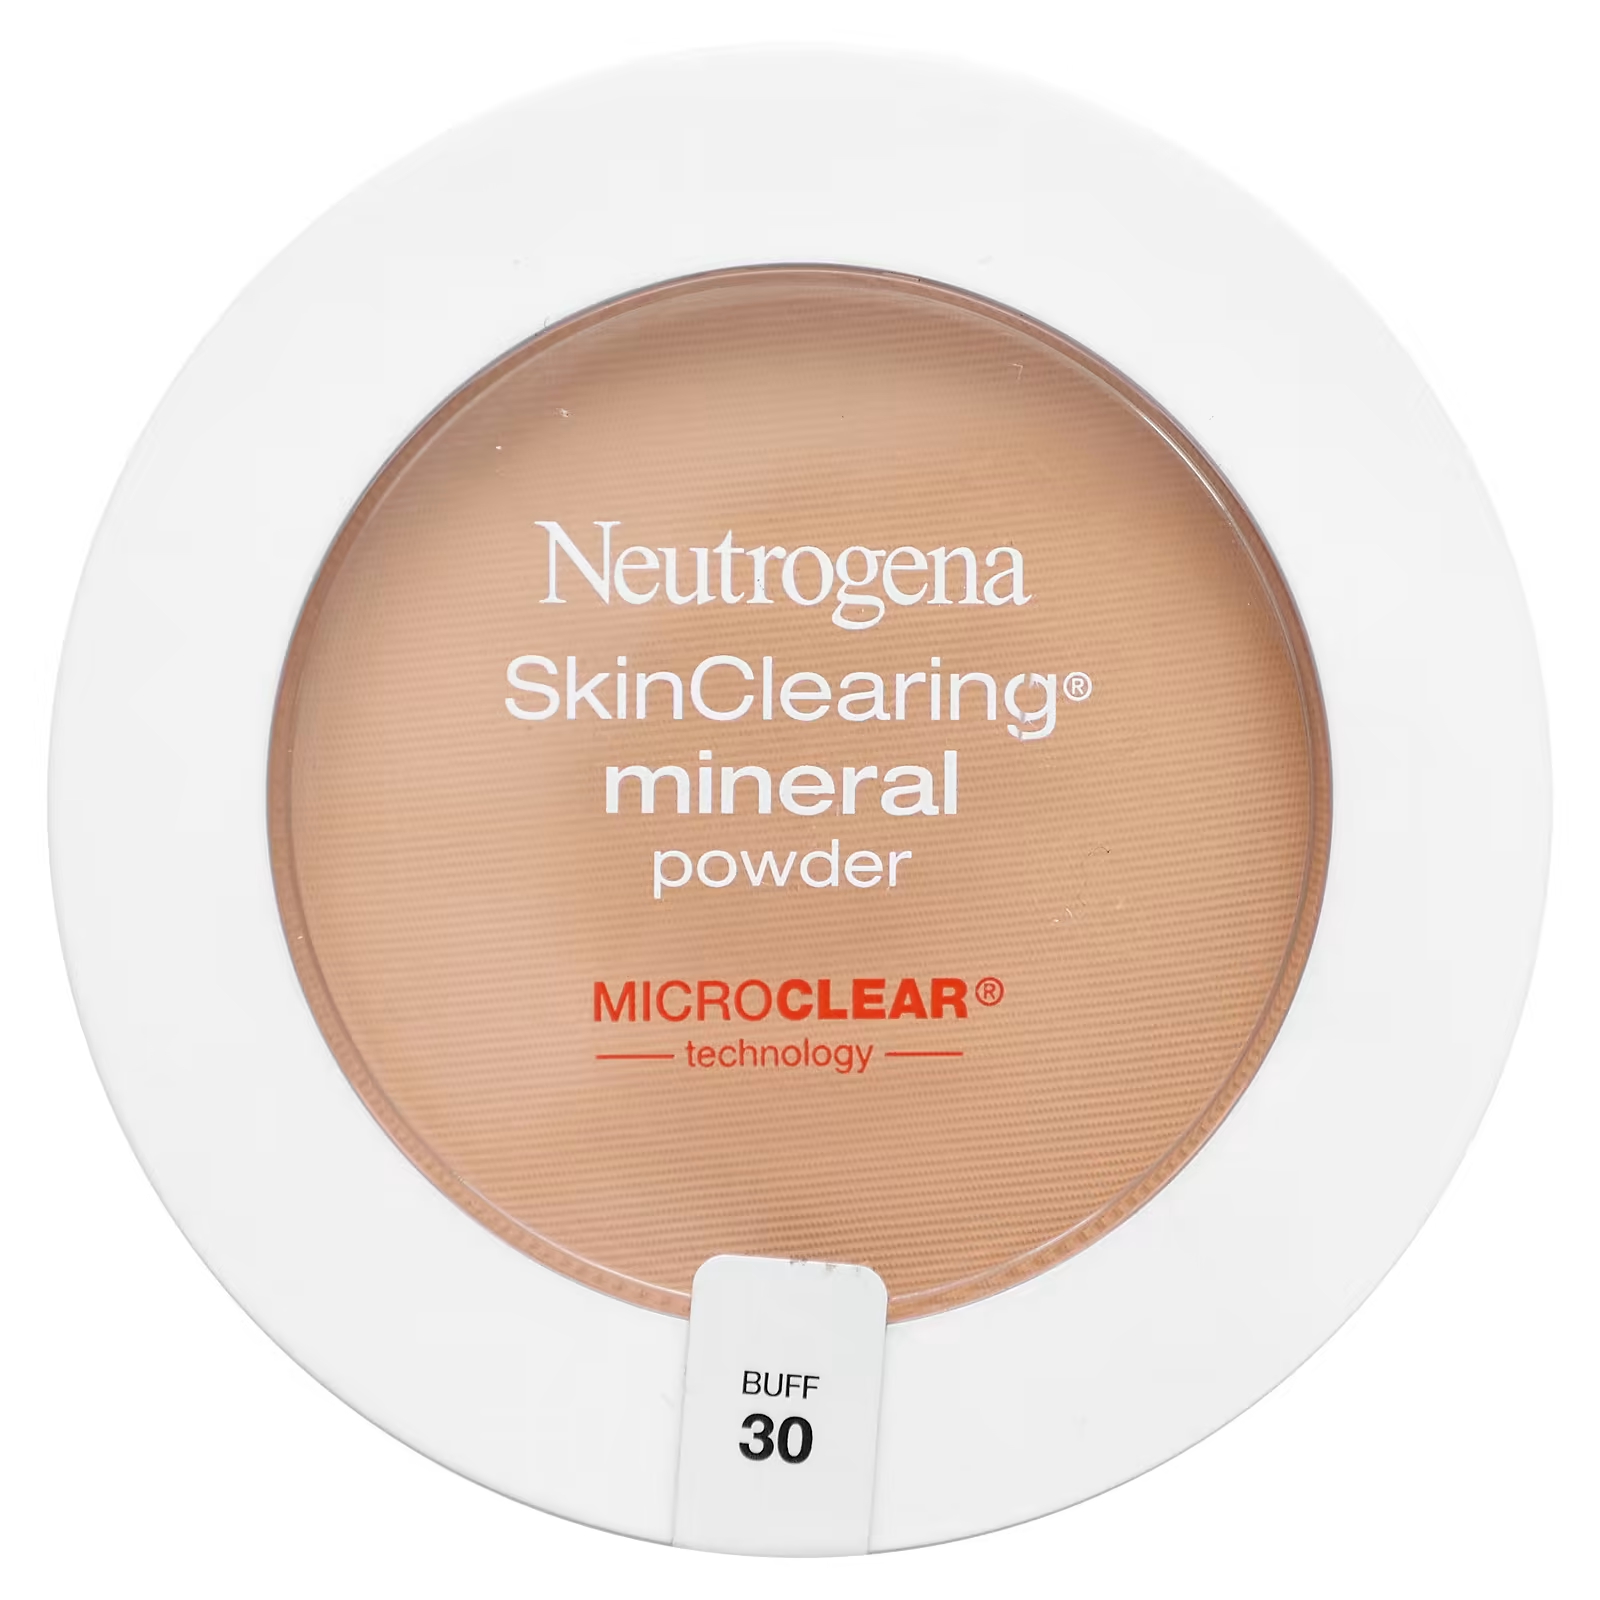 Пудра минеральная Neutrogena SkinClearing для очищения кожи neutrogena минеральная пудра для очищения кожи бафф 30 11 г 0 38 унции